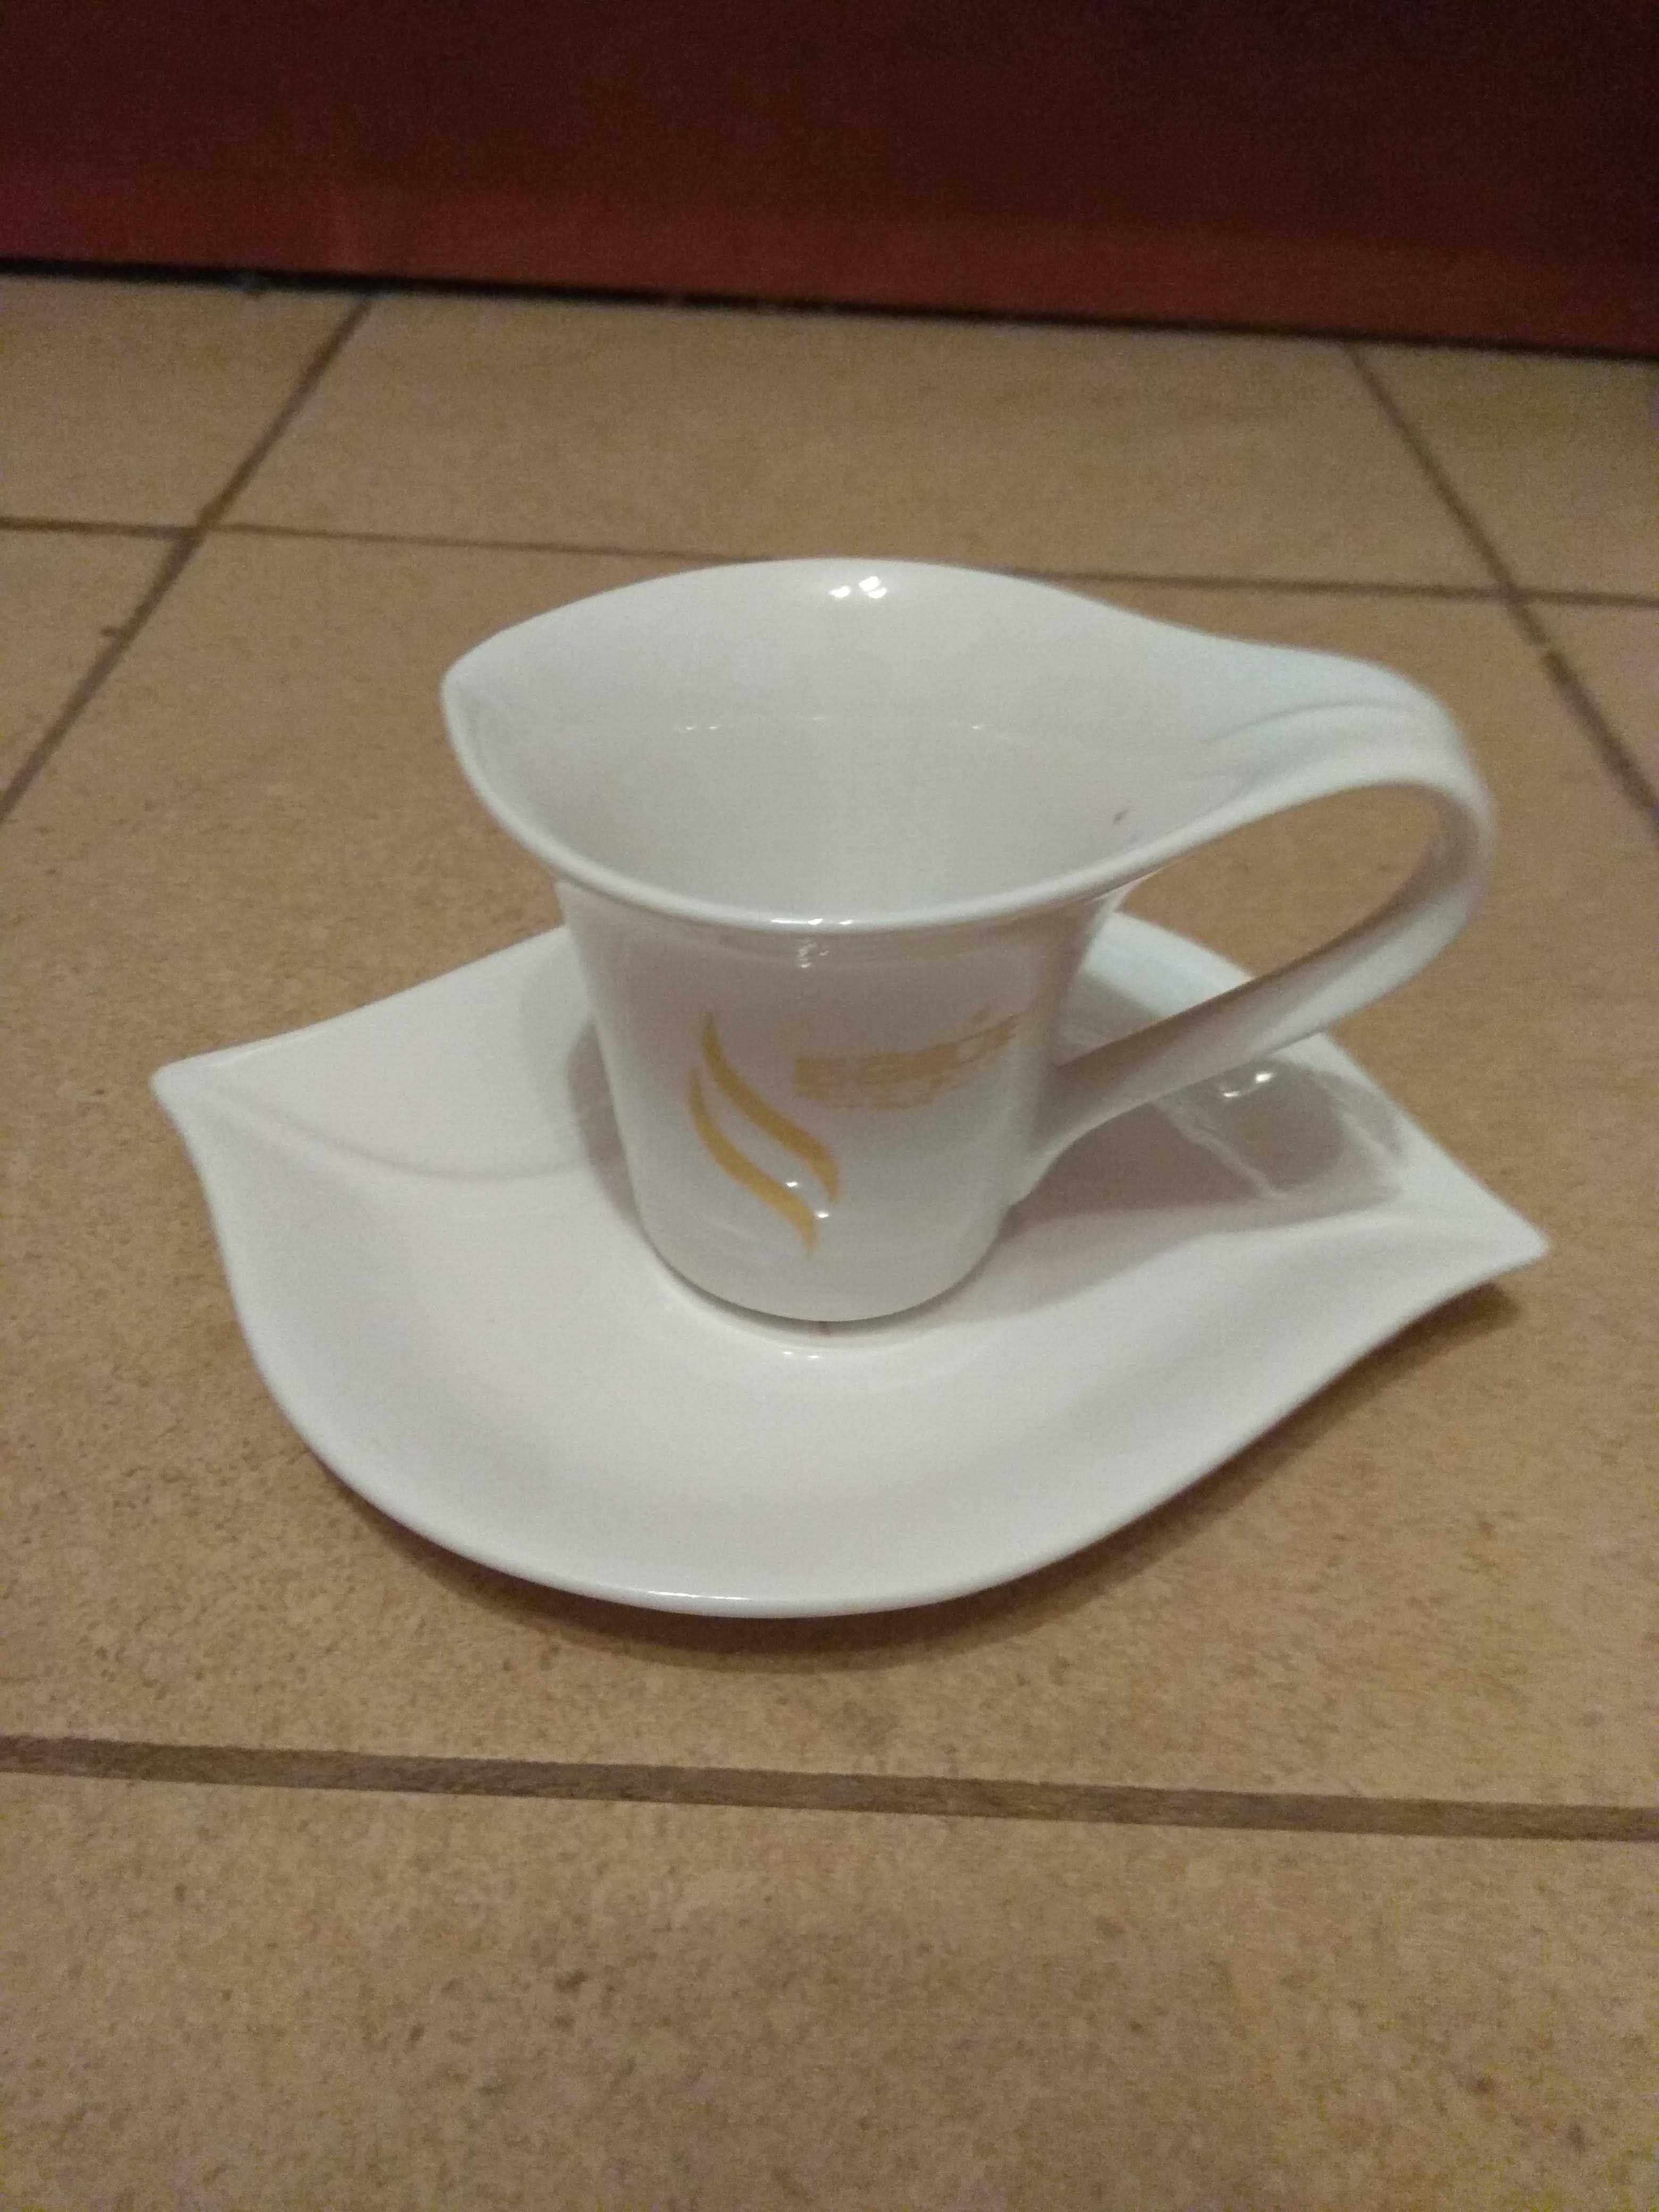 оригинальный подарок: кофейная чашка с блюдцем из китайского фарфора